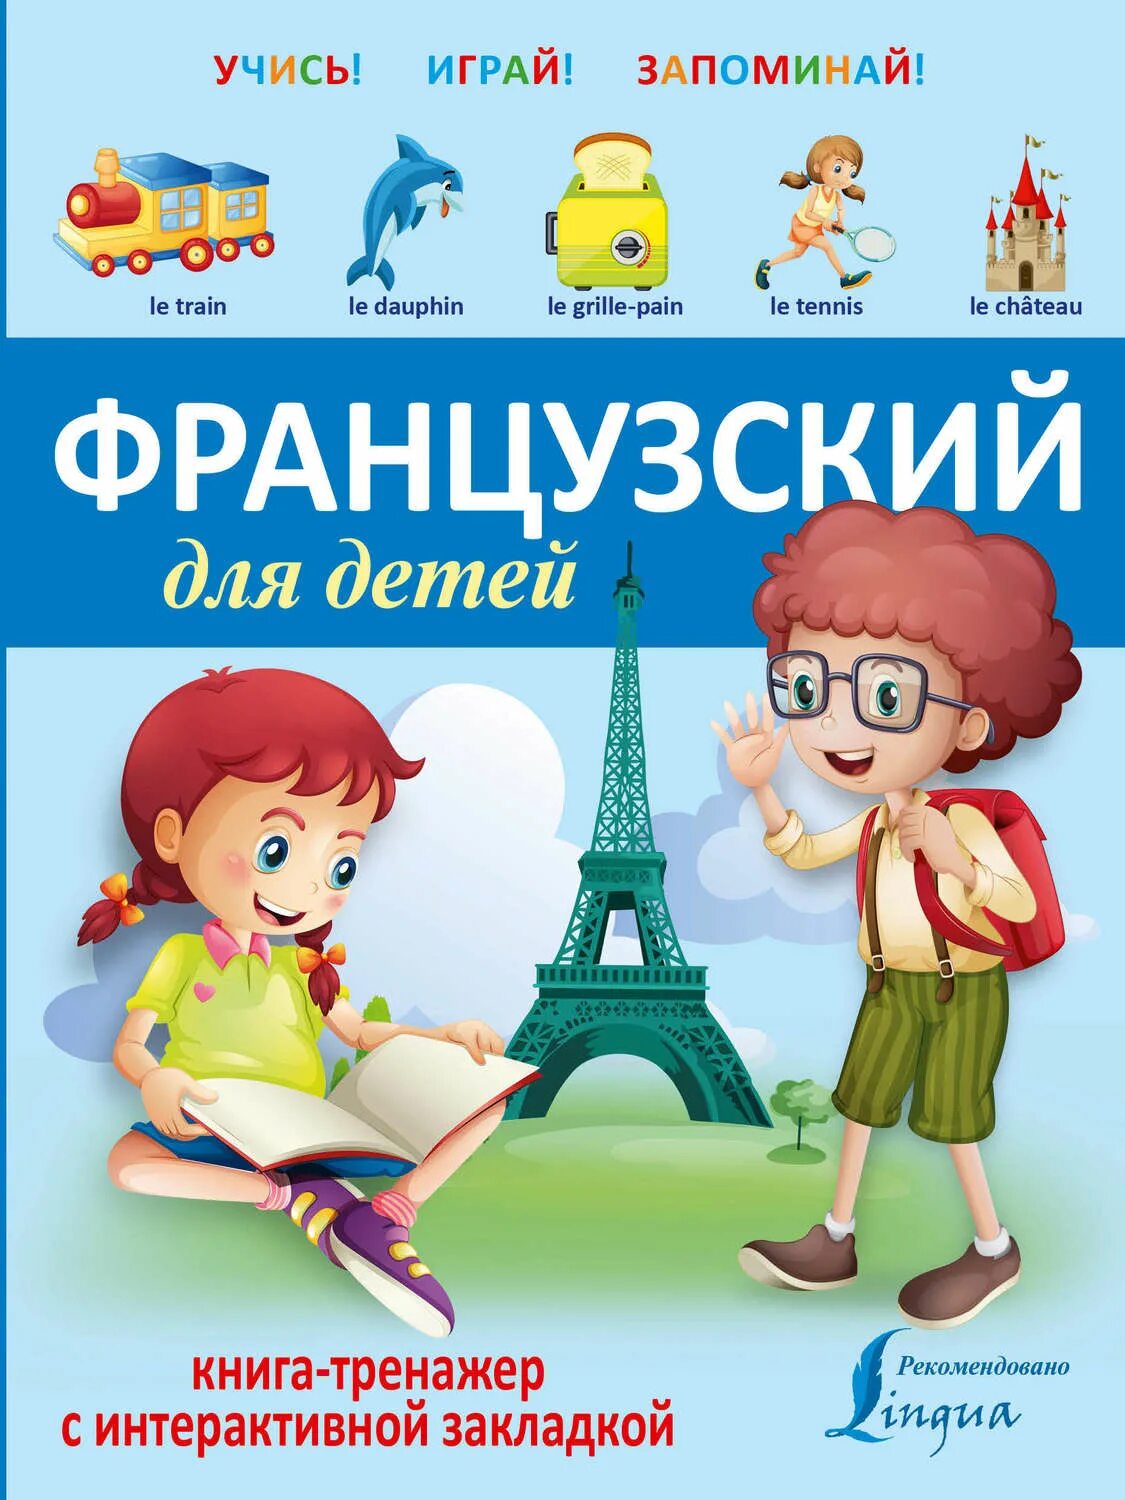 Уроки изучения французского языка. Французские книги для детей. Французский для детей учебник. Французский язык для малышей. Французский язык для детей книга.